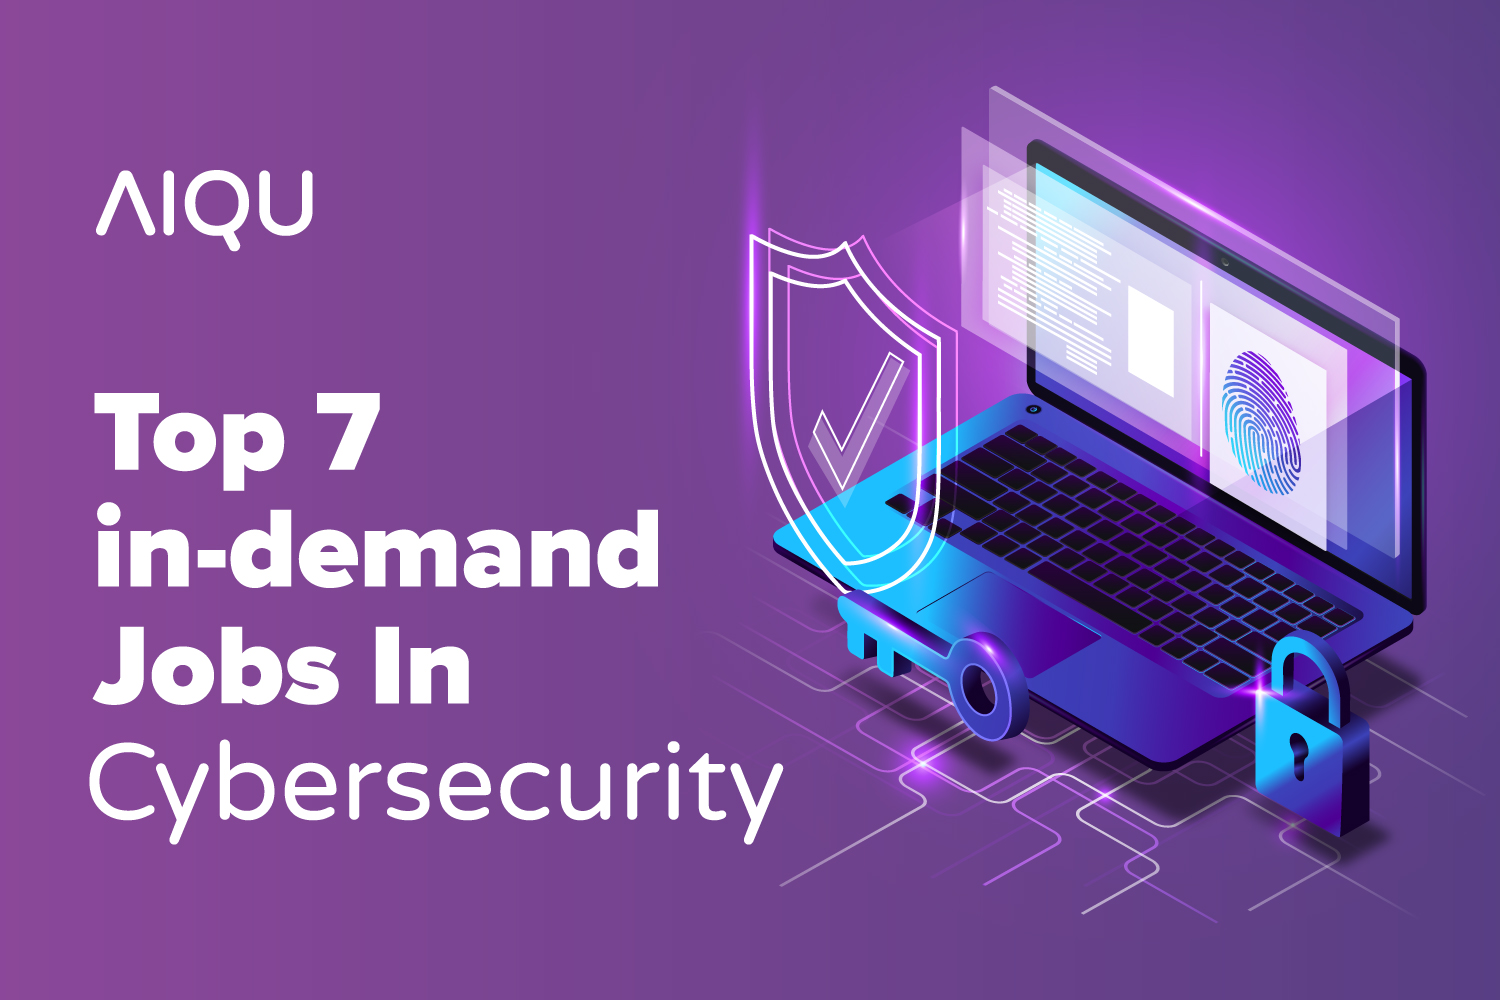 Top 7 In-demand Jobs In Cybersecurity